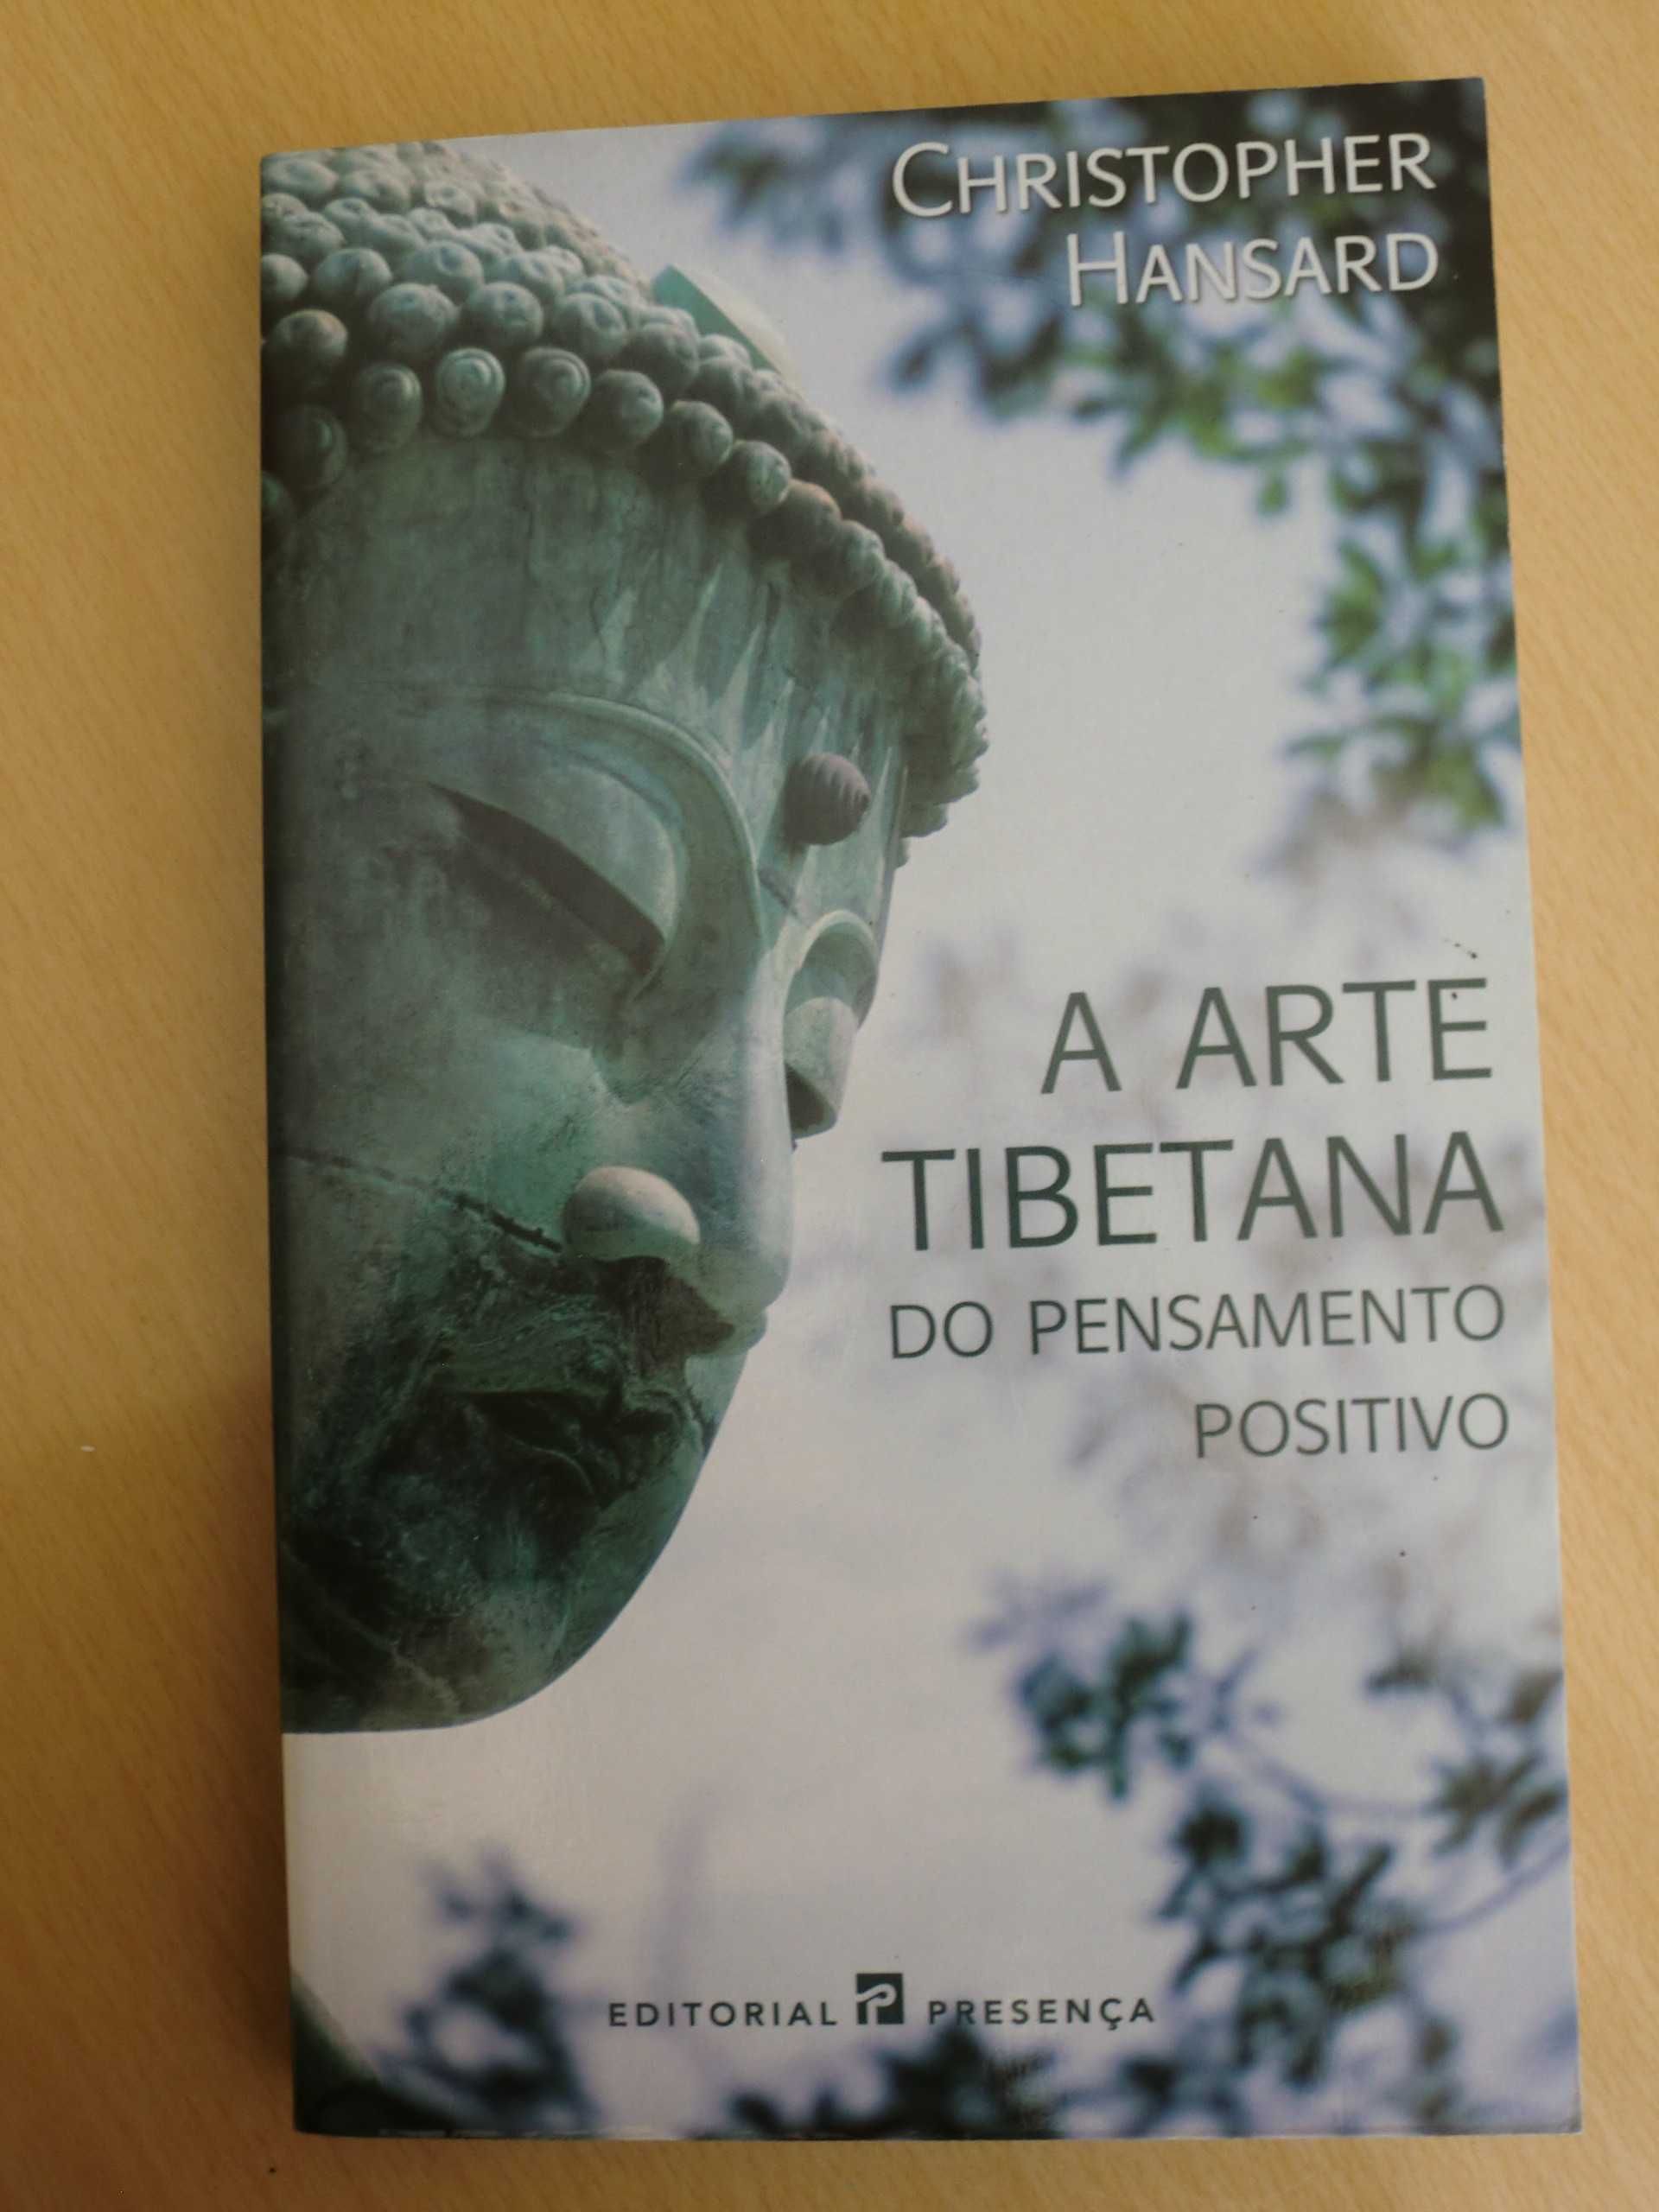 A Arte Tibetana do Pensamento Positivo
de Christopher Hansard